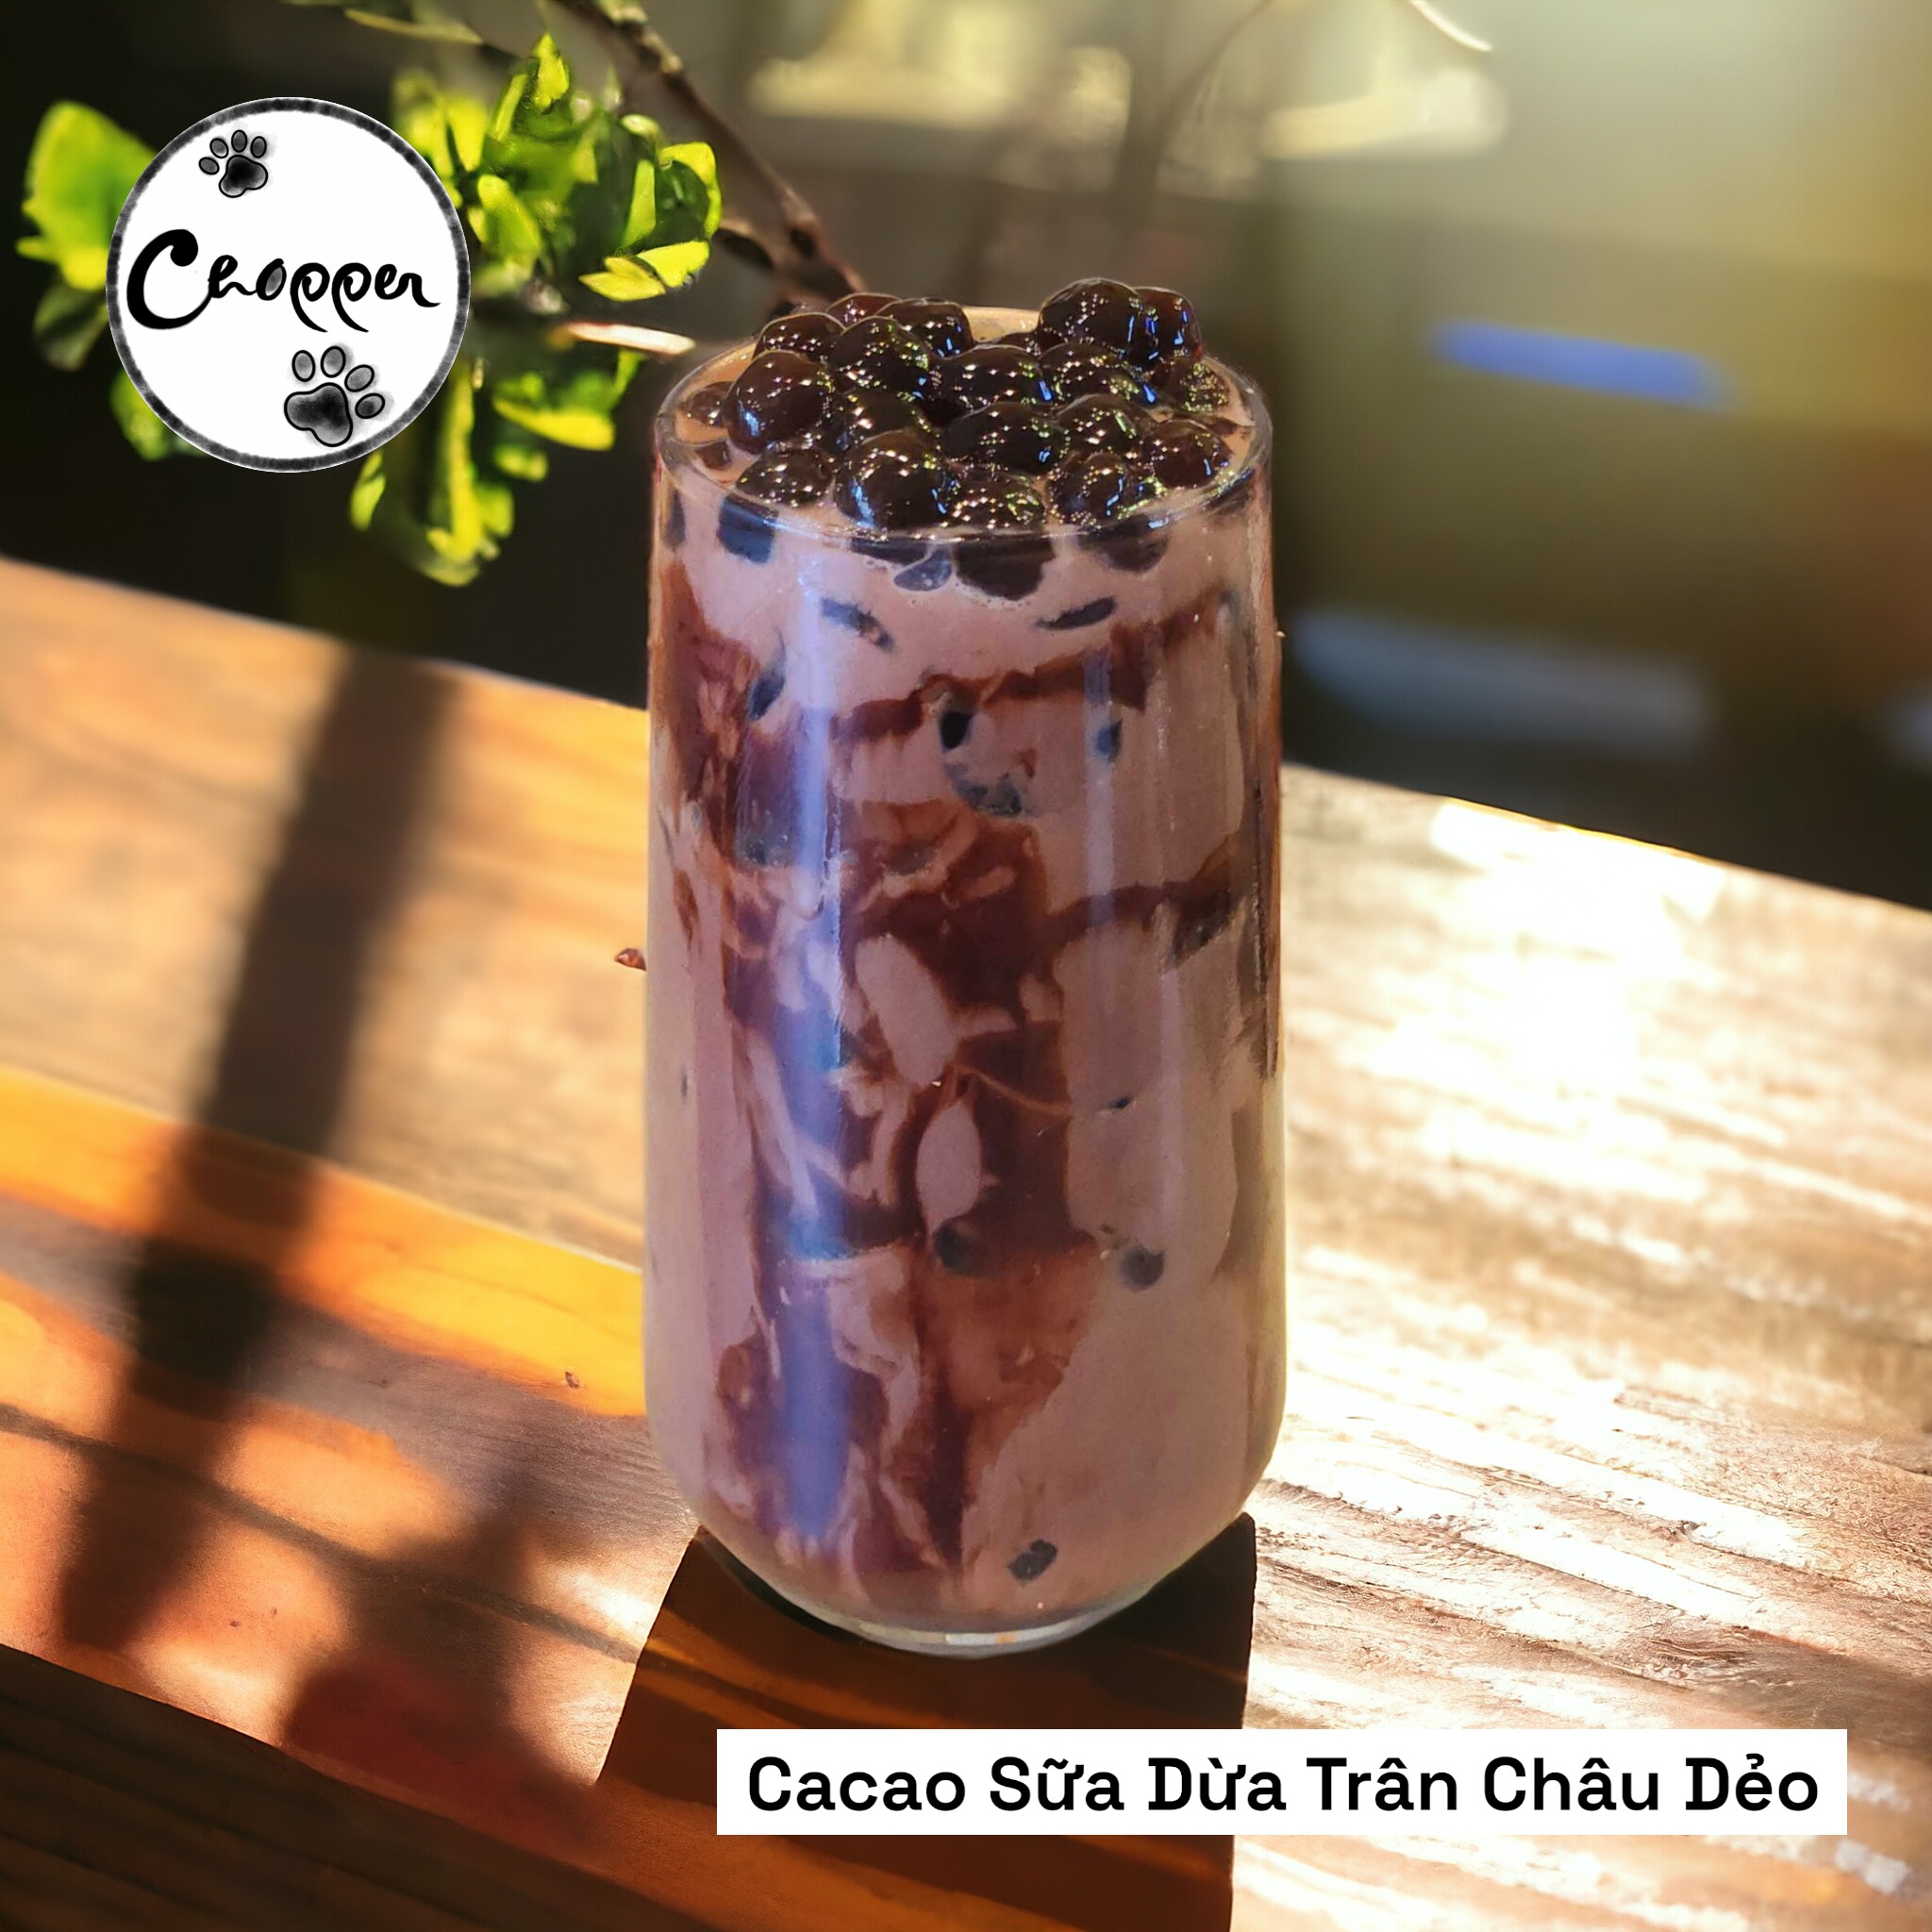 Cacao Sữa Dừa Trân Châu Dẻo